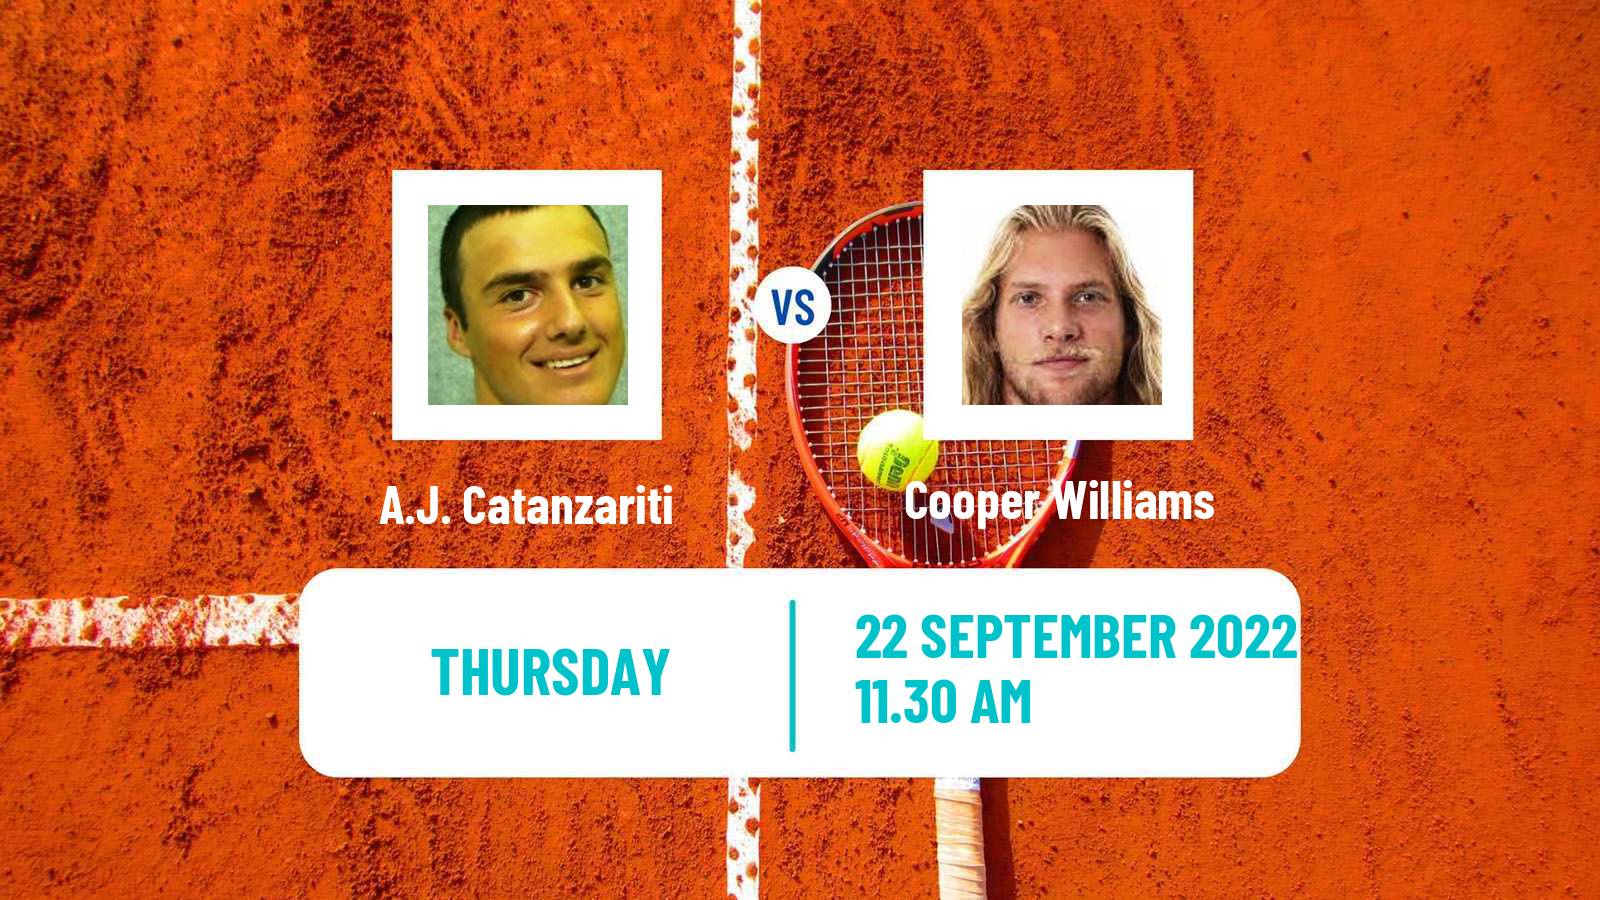 Tennis ITF Tournaments A.J. Catanzariti - Kütahya